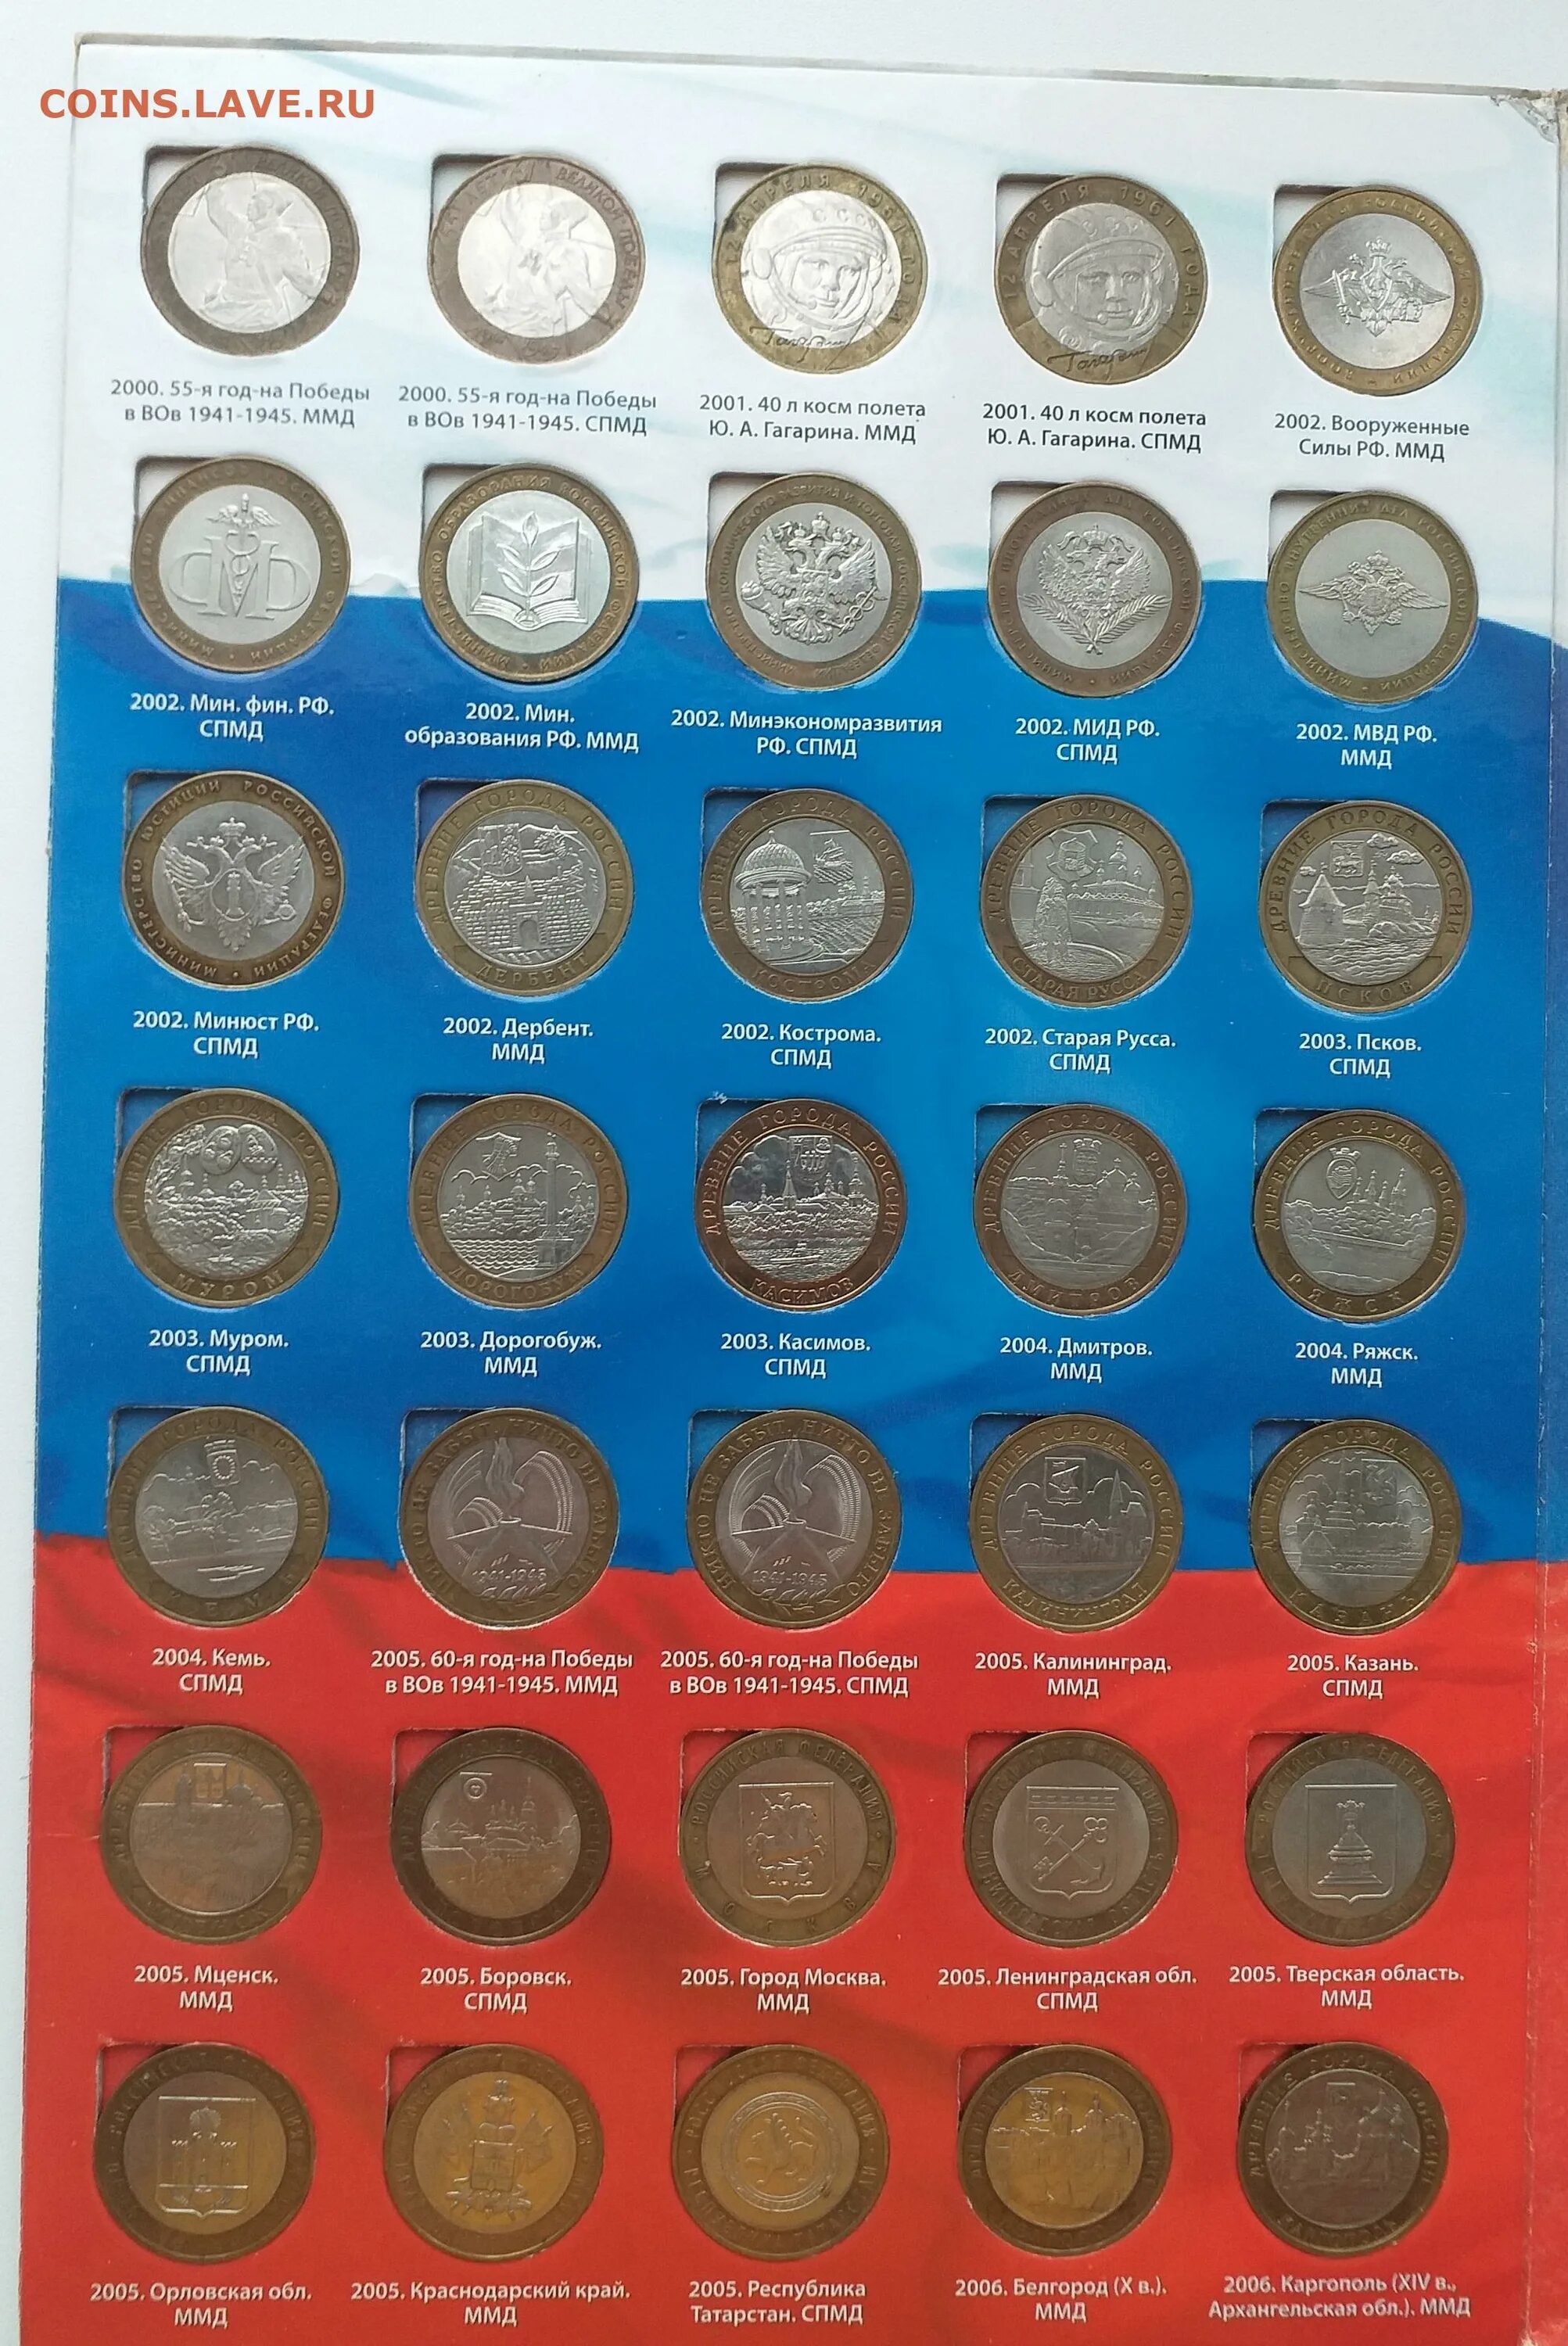 Биметаллические 10 список. 10 Рублей Биметалл с 2000 по 2023. Таблица монет 10 рублей Биметалл. 10 Рублевые монеты Биметалл список. Полный список 10 рублевых монет Биметалл.